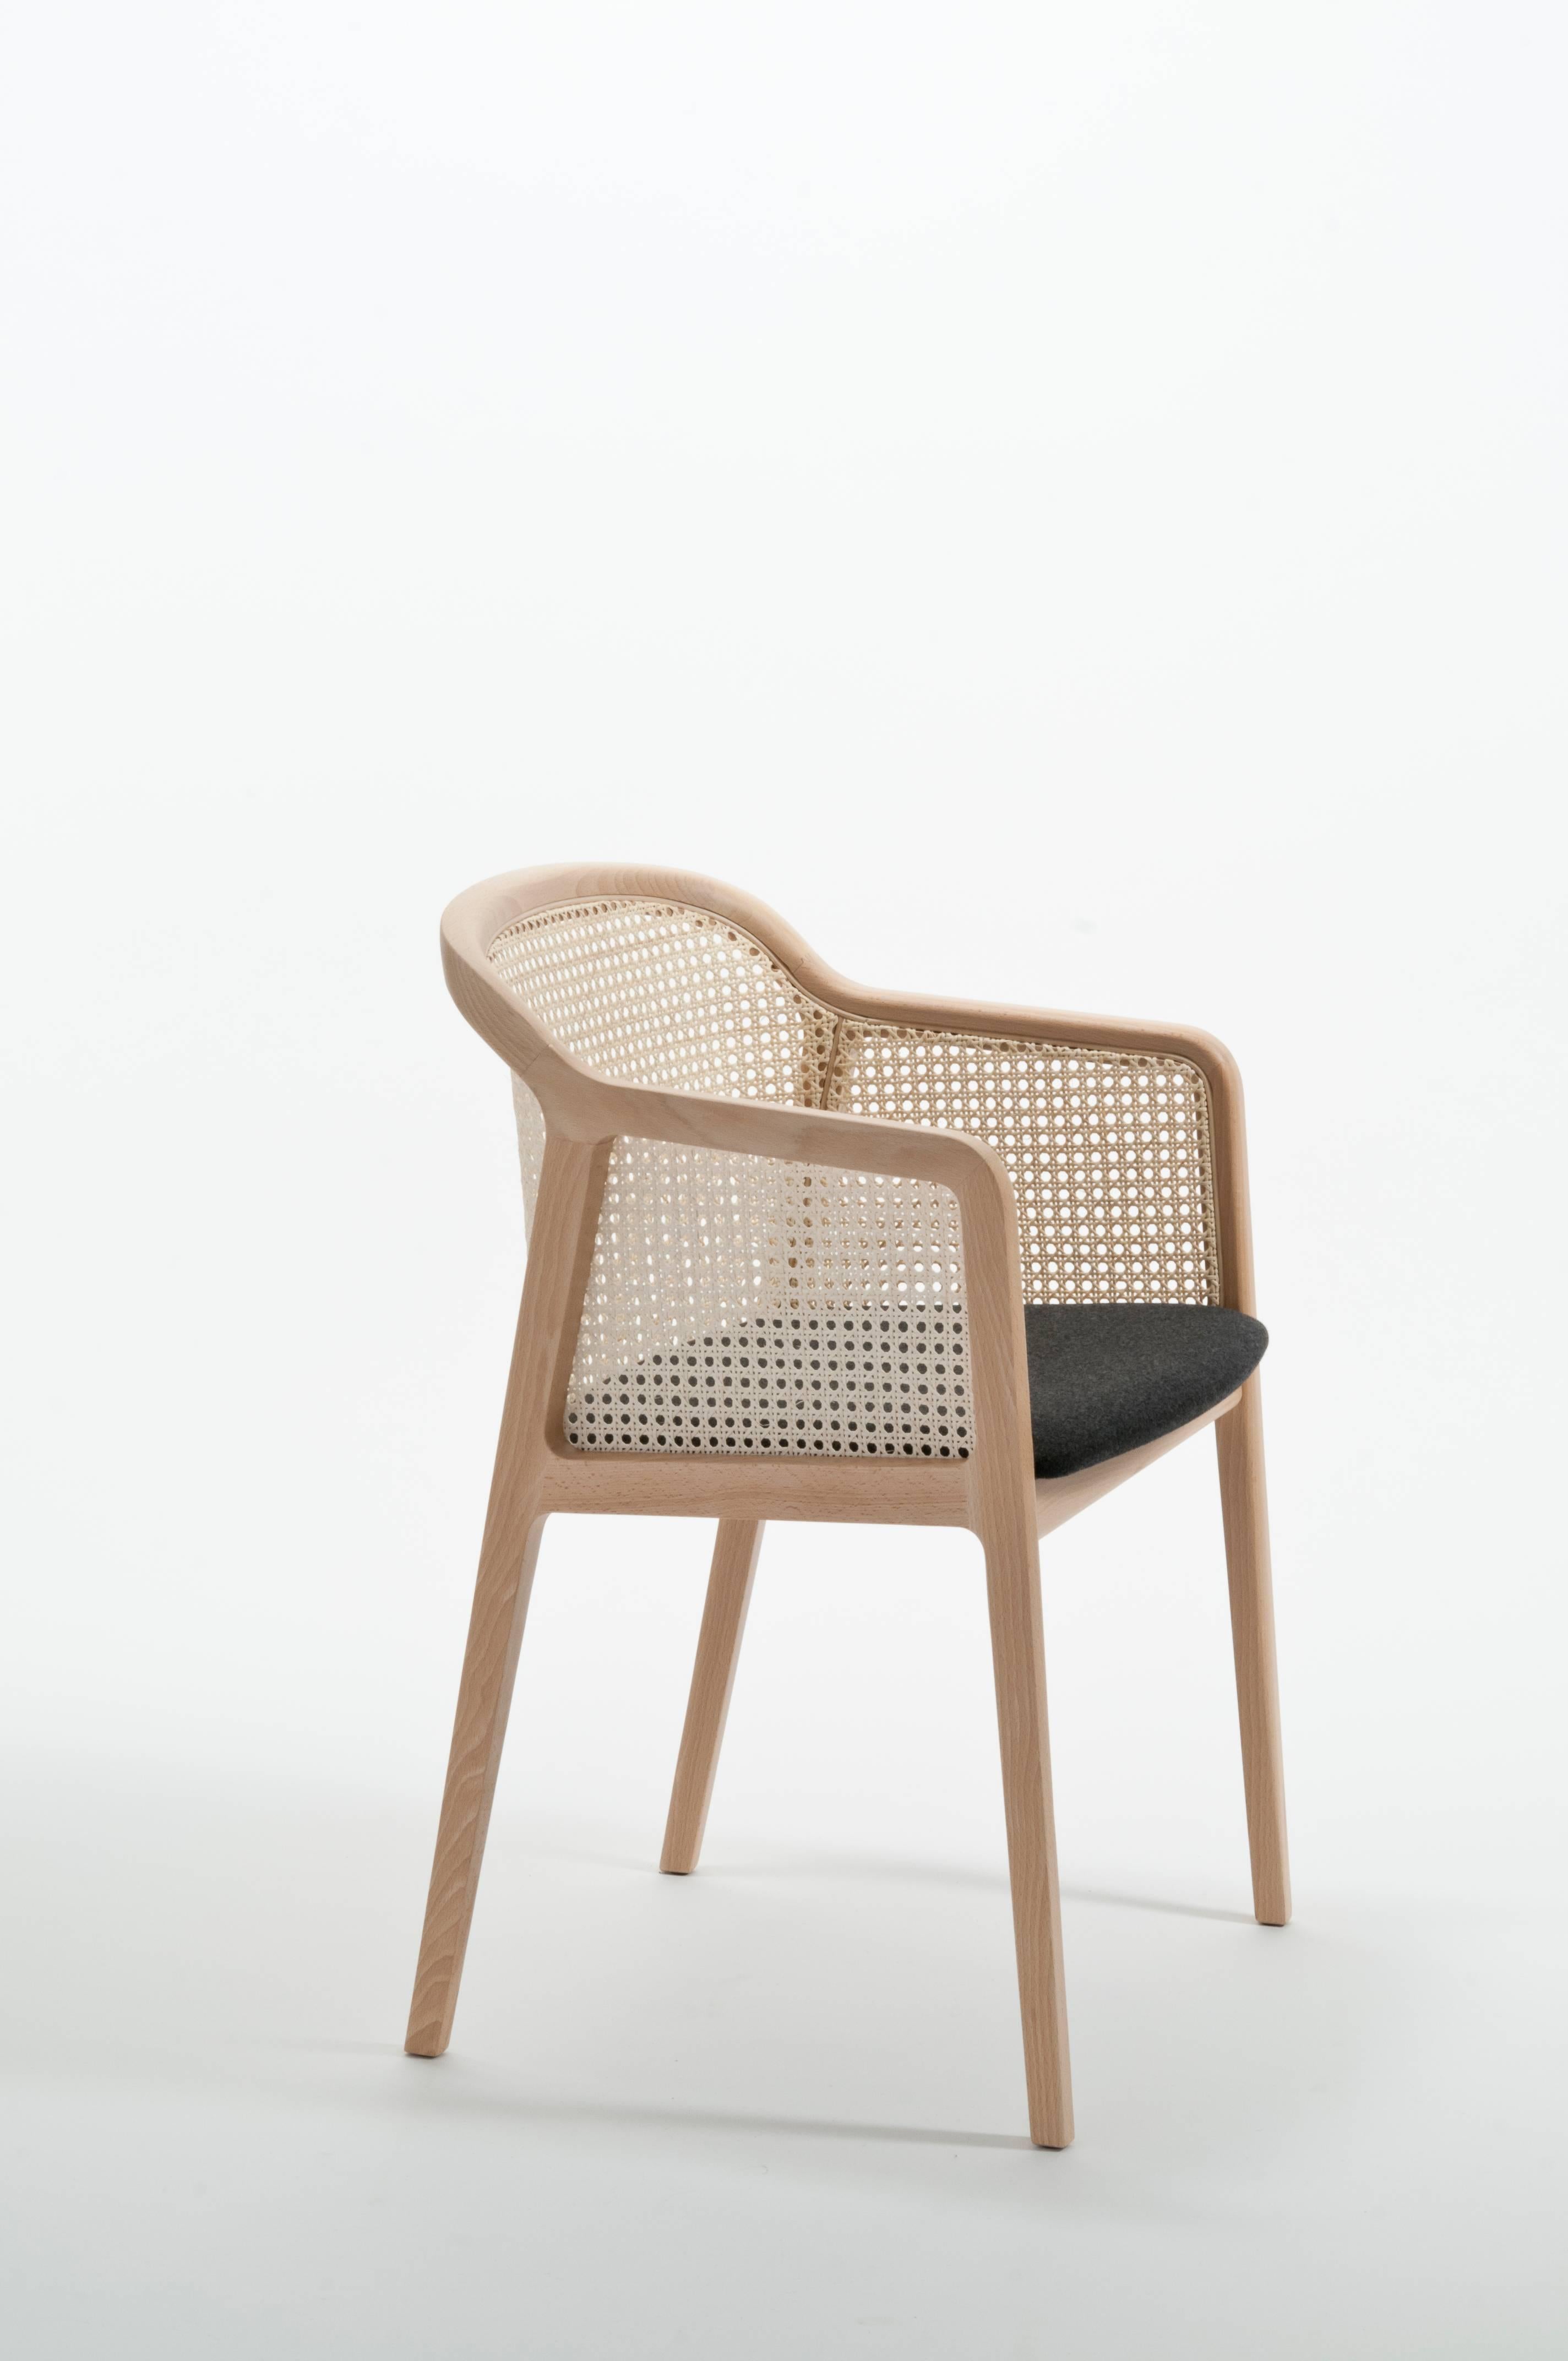 Vienna ist ein außergewöhnlich komfortabler und eleganter Sessel, entworfen von Emmanuel Gallina, der gerne Brancusi zitiert, wenn er sagt, dass 